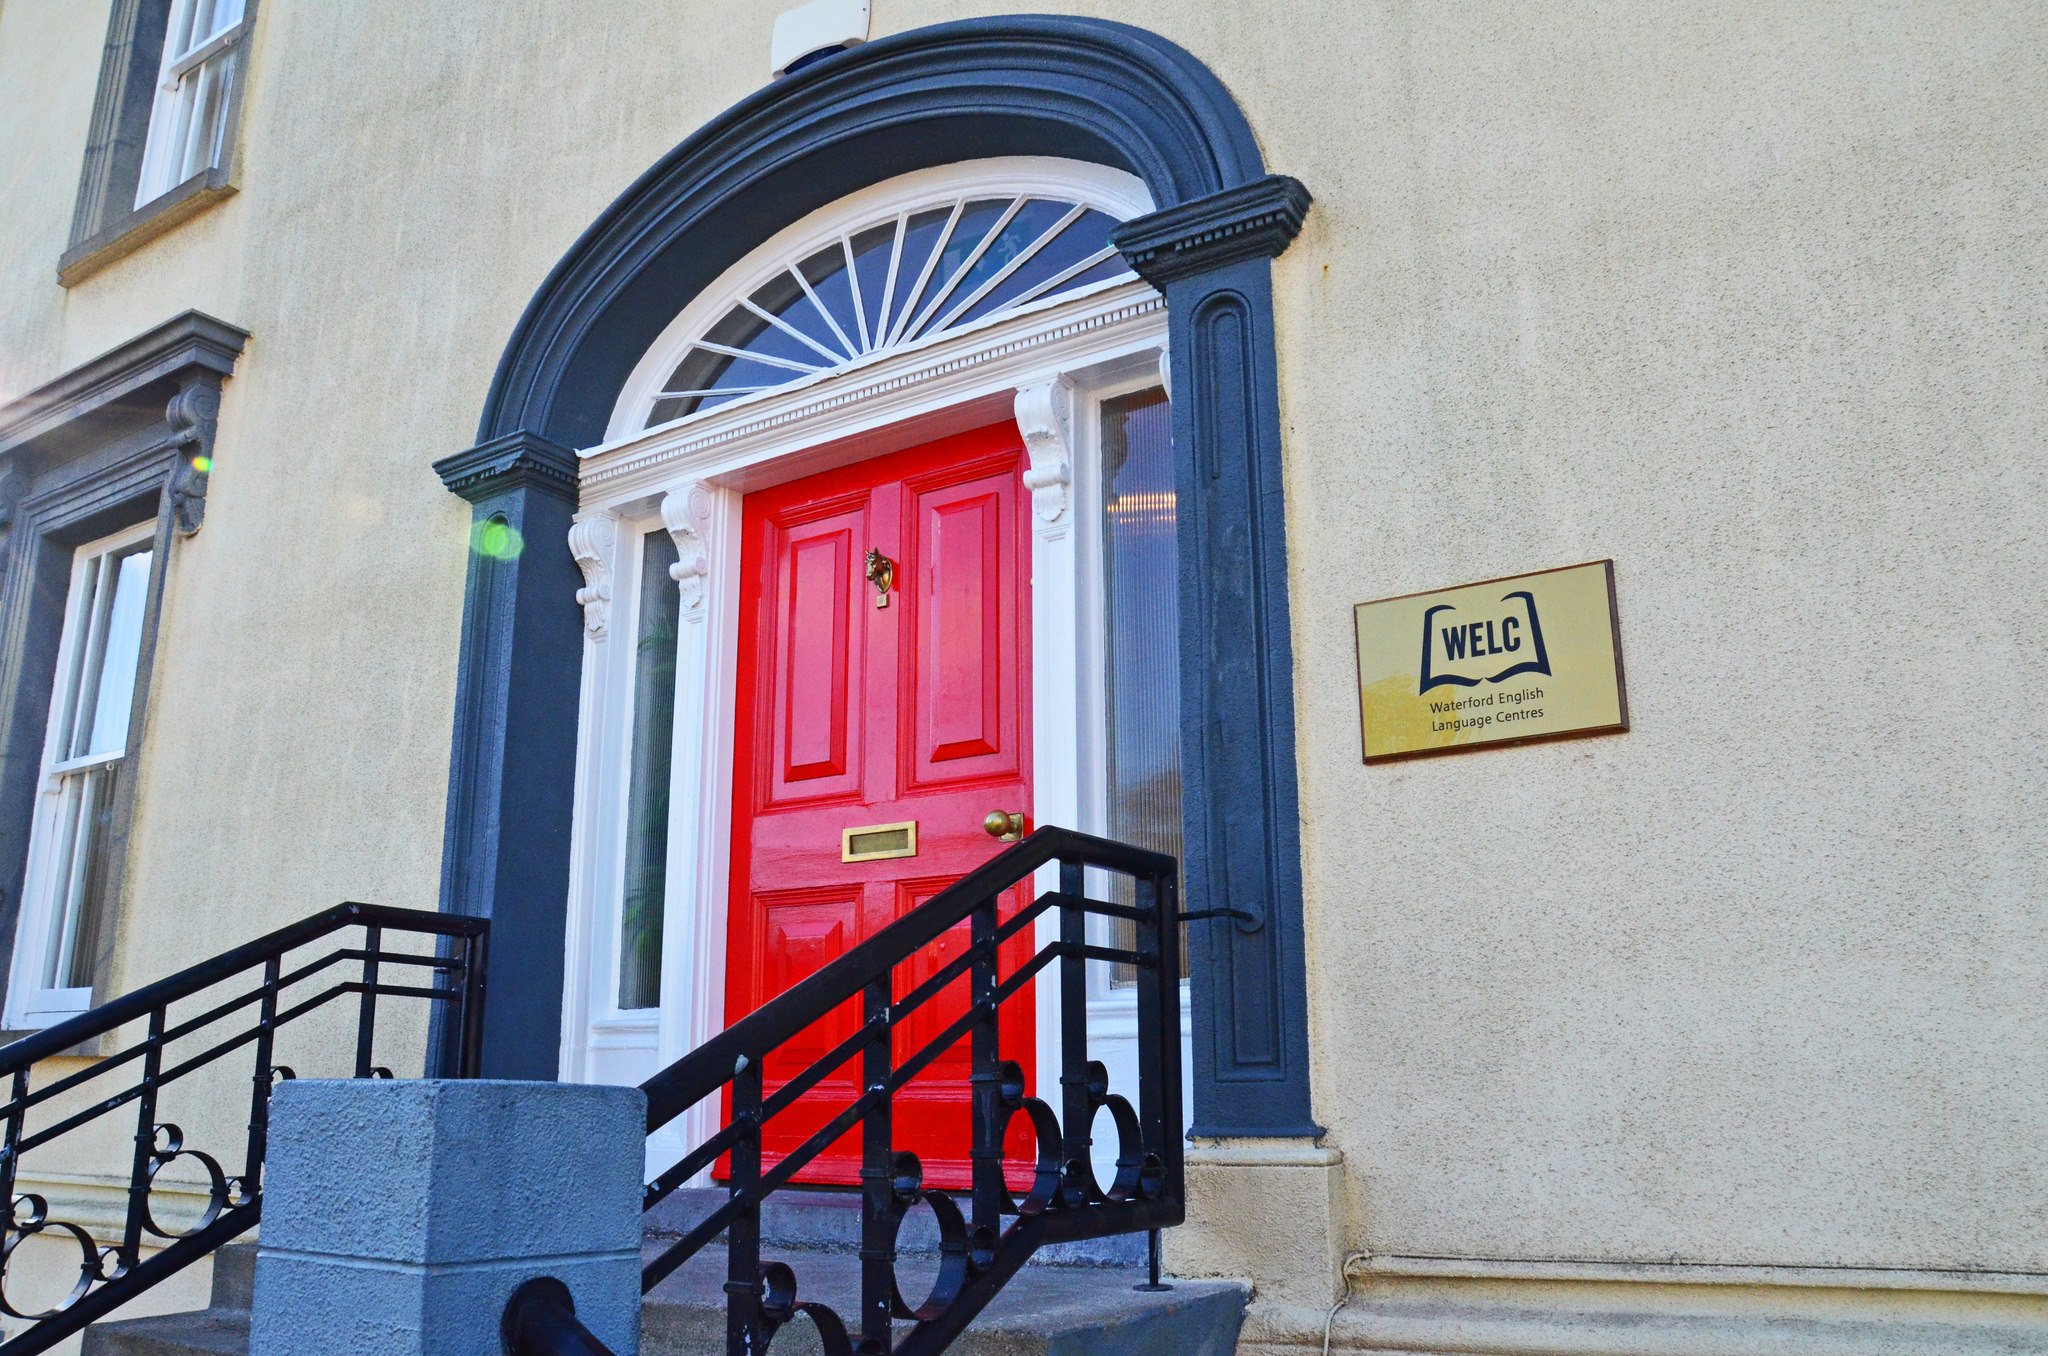 waterford english language centre door red door